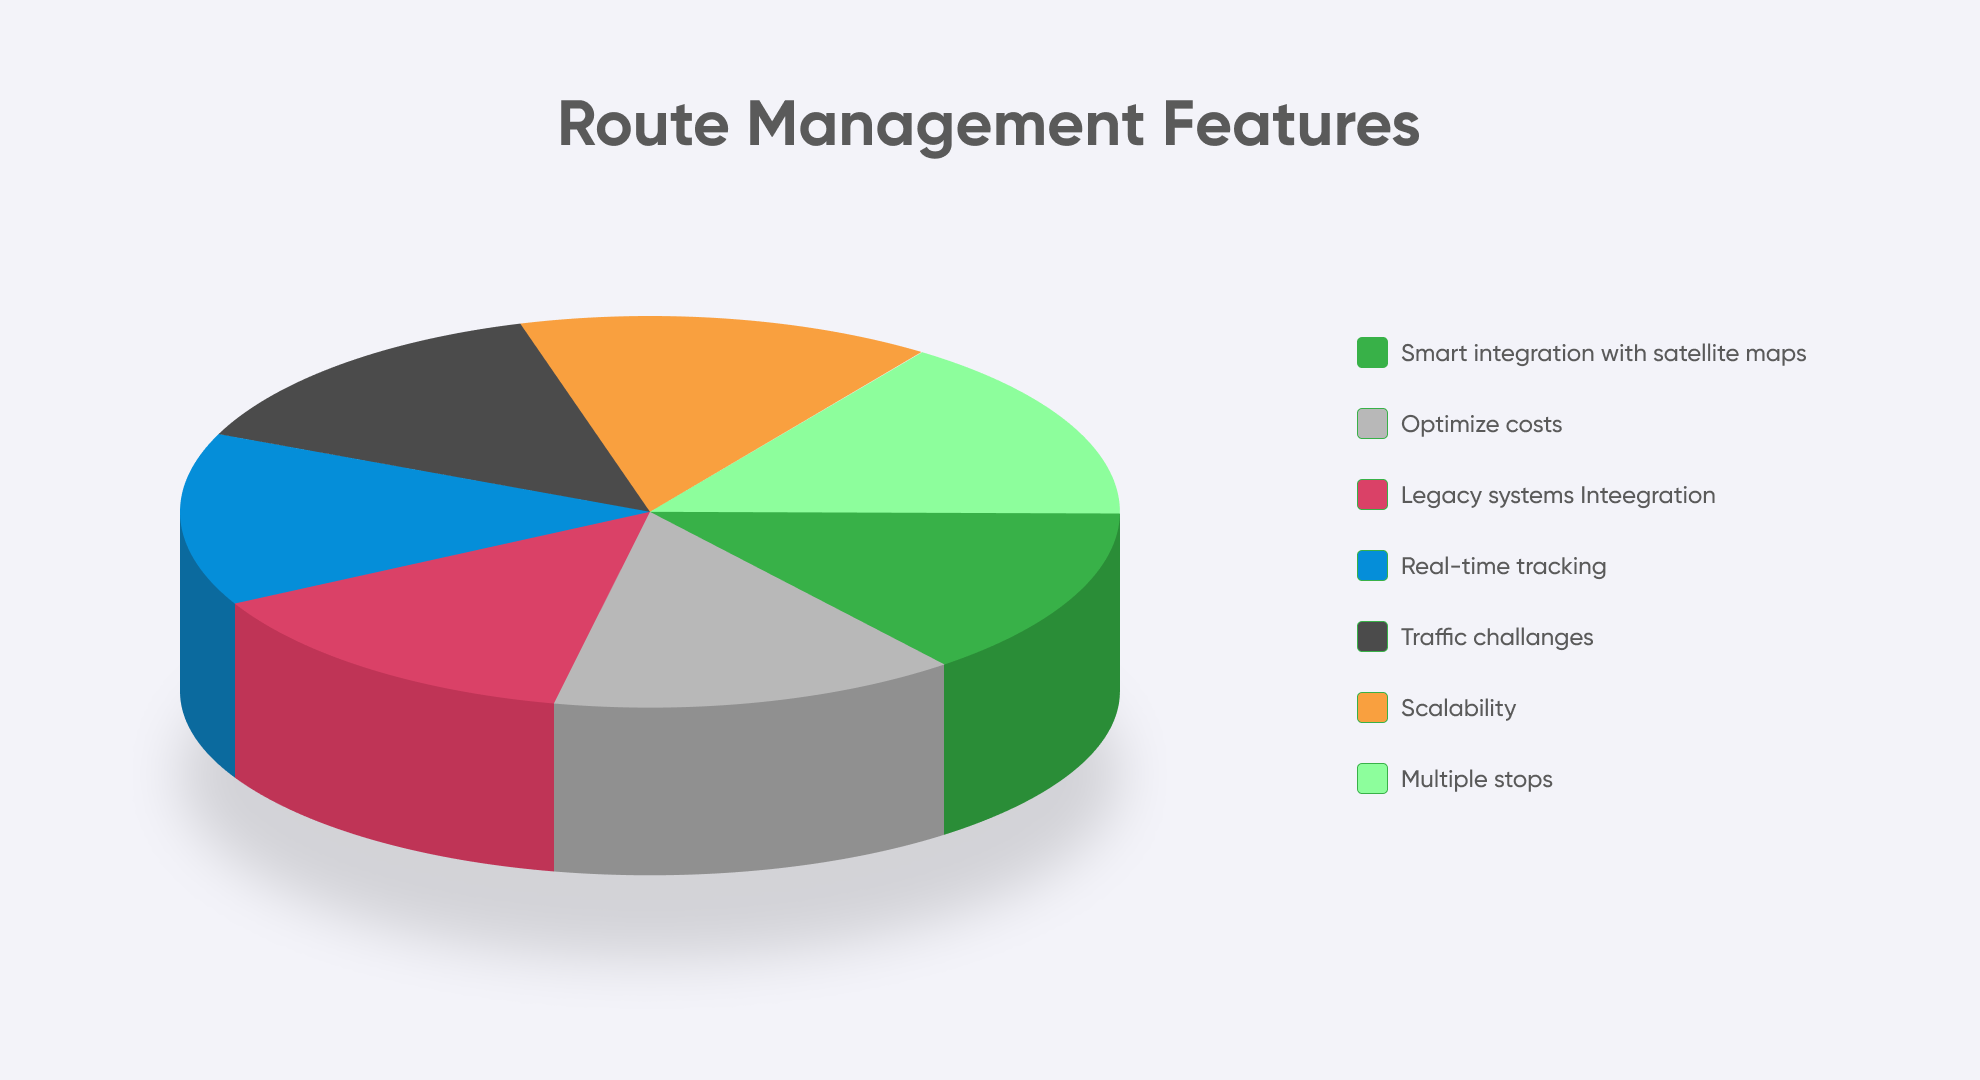 Route Management Features diagram